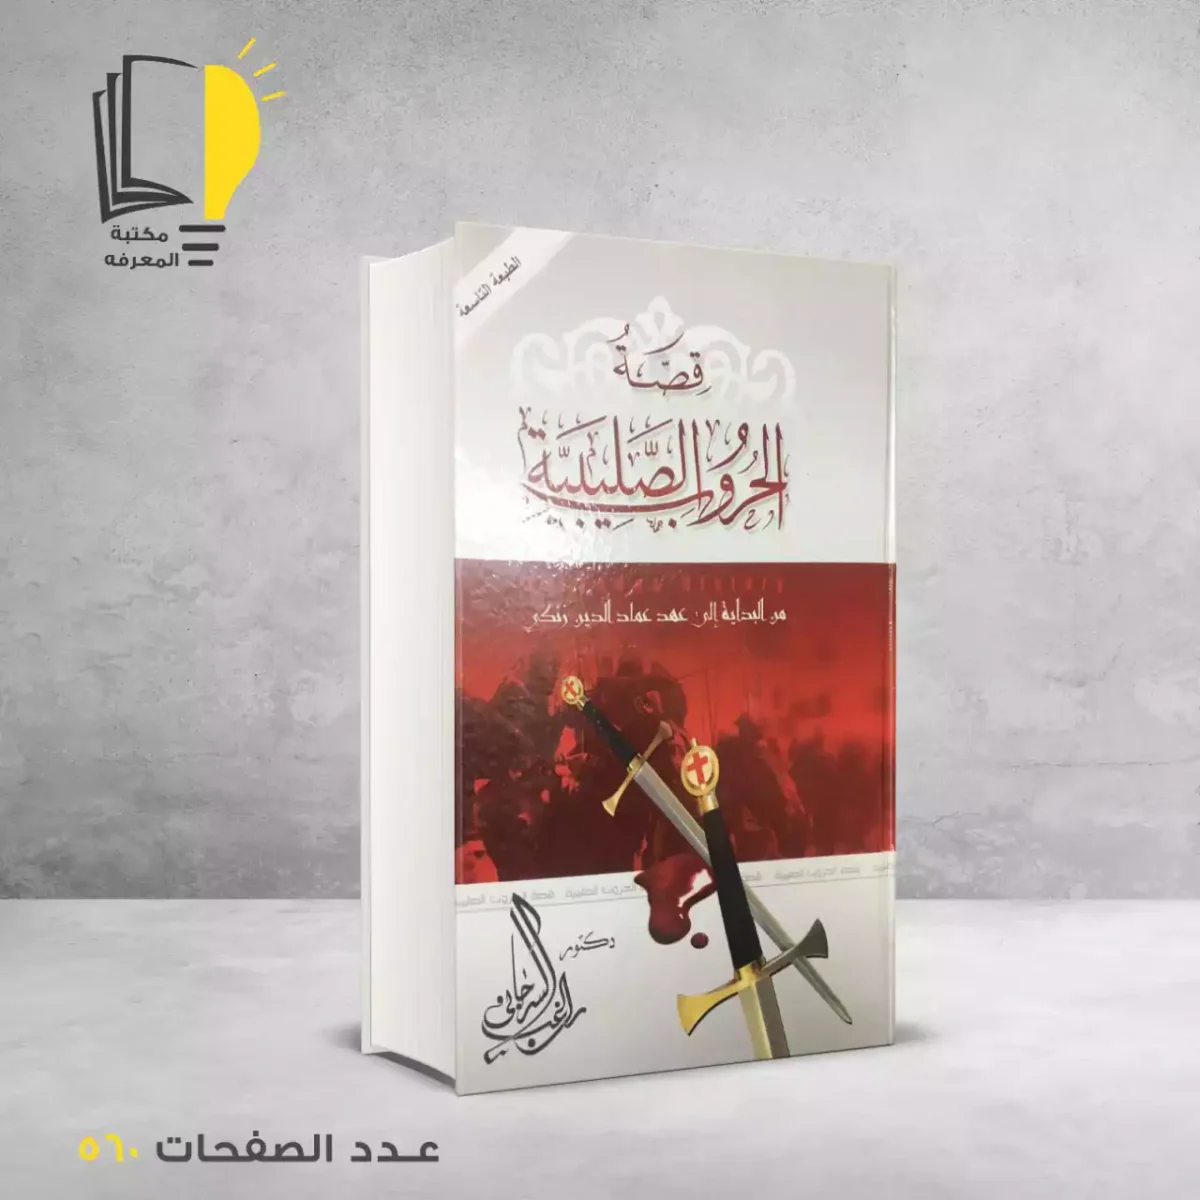 مكتبة المعرفة - كتاب قصة الحروب الصليبية_2